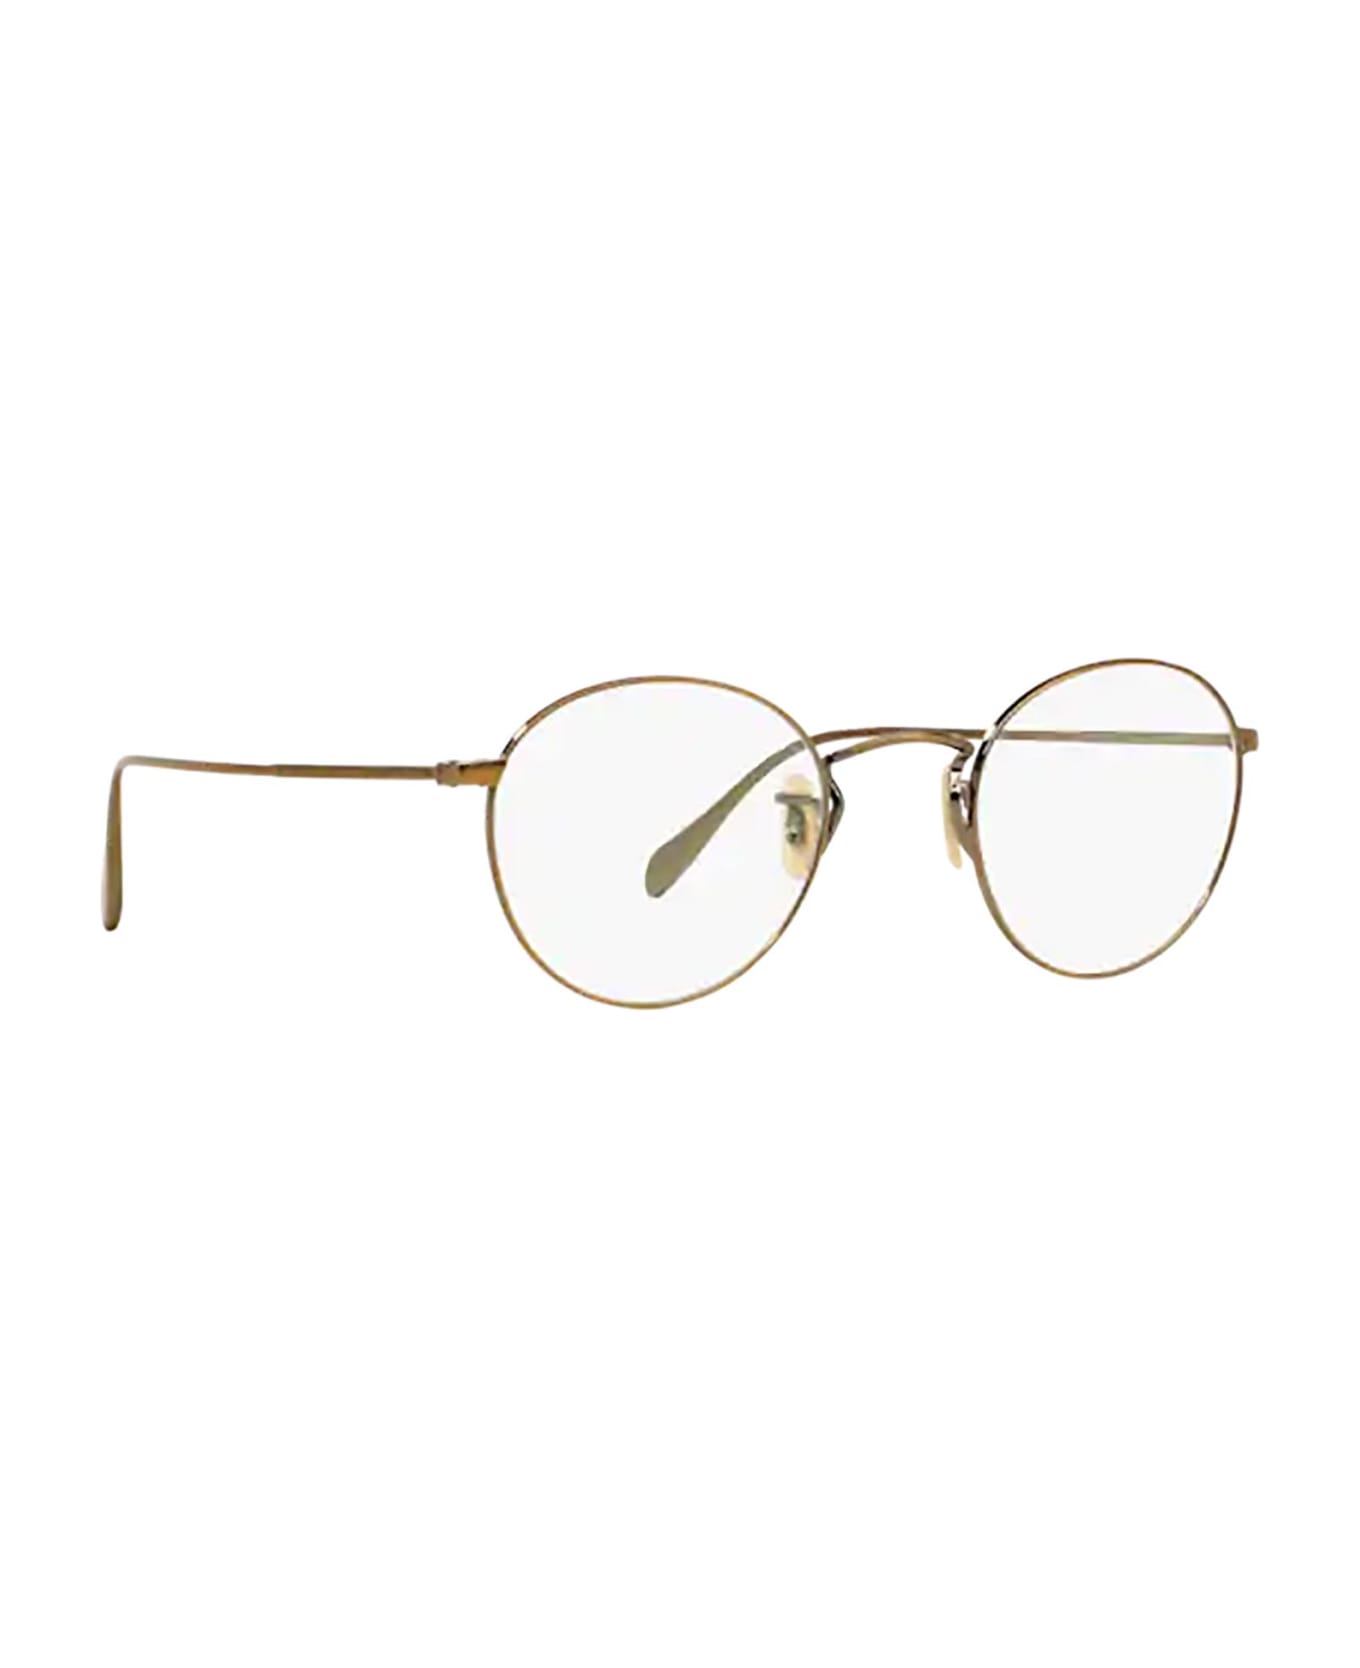 Oliver Peoples Ov1186 Antique Gold Glasses - Antique Gold